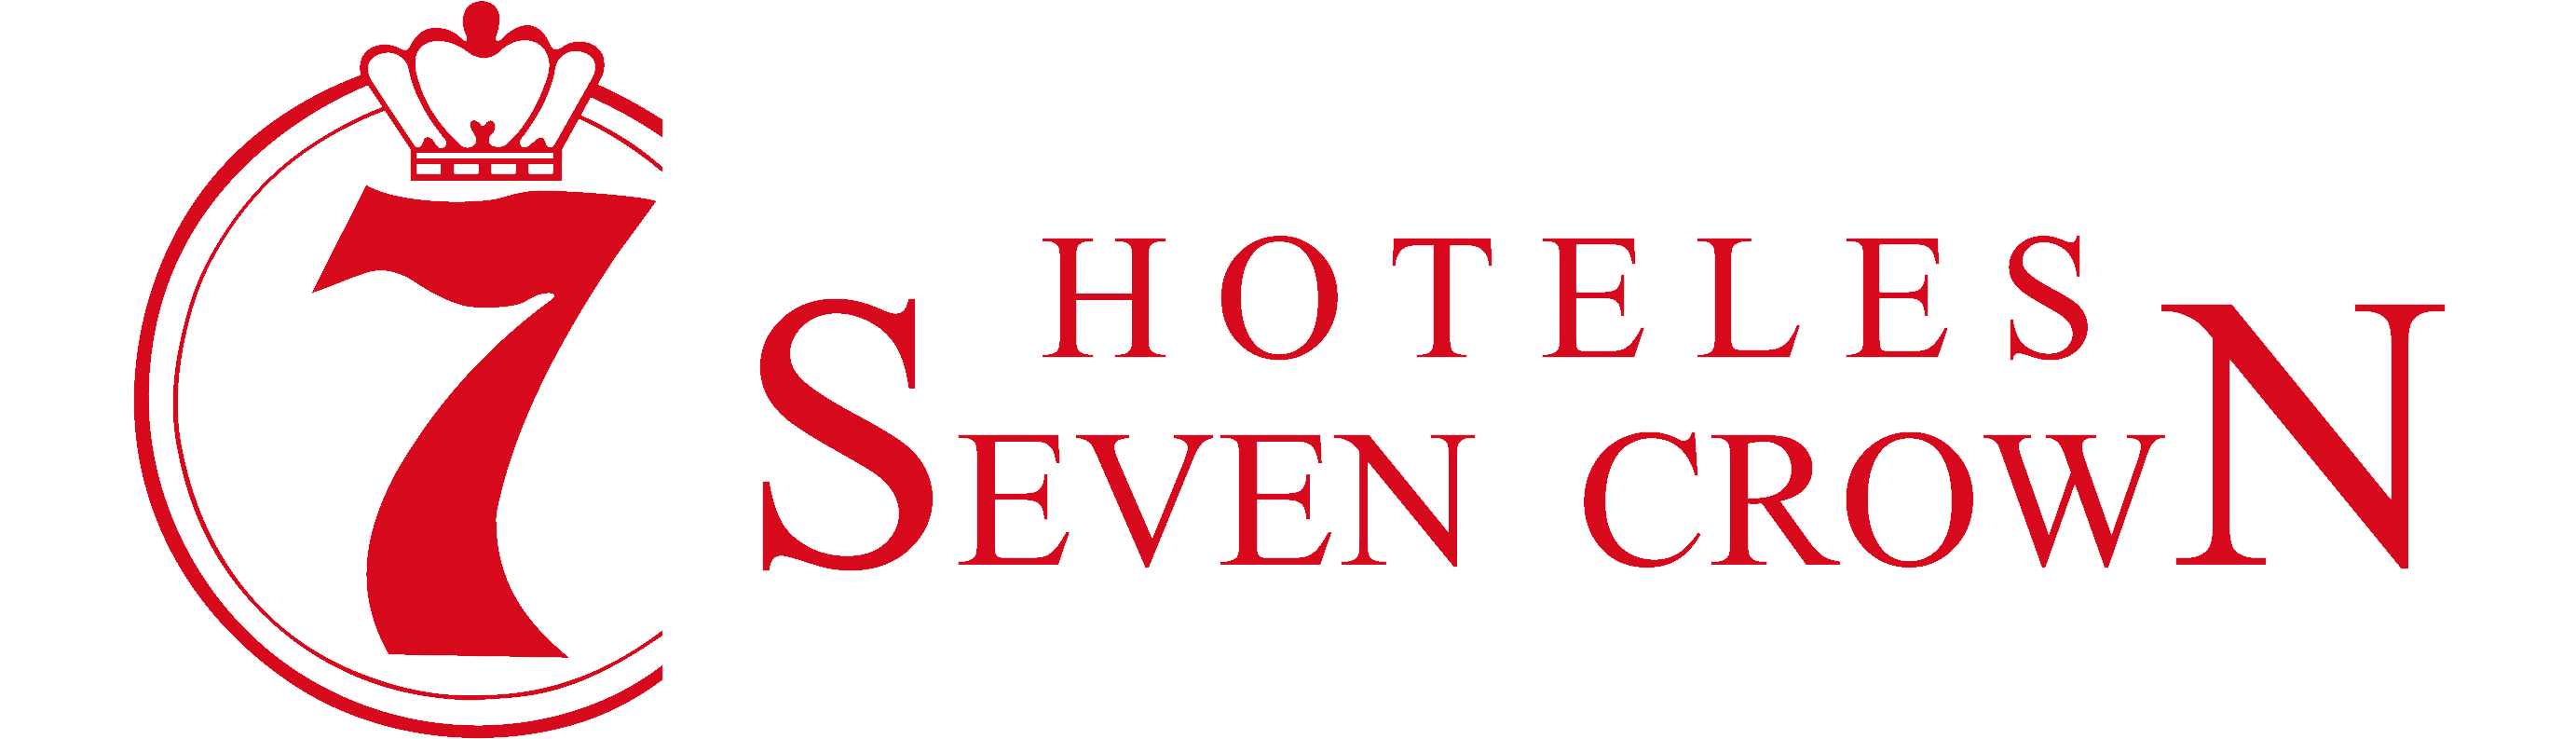 Logo de la cadena de hoteles SevenCrown